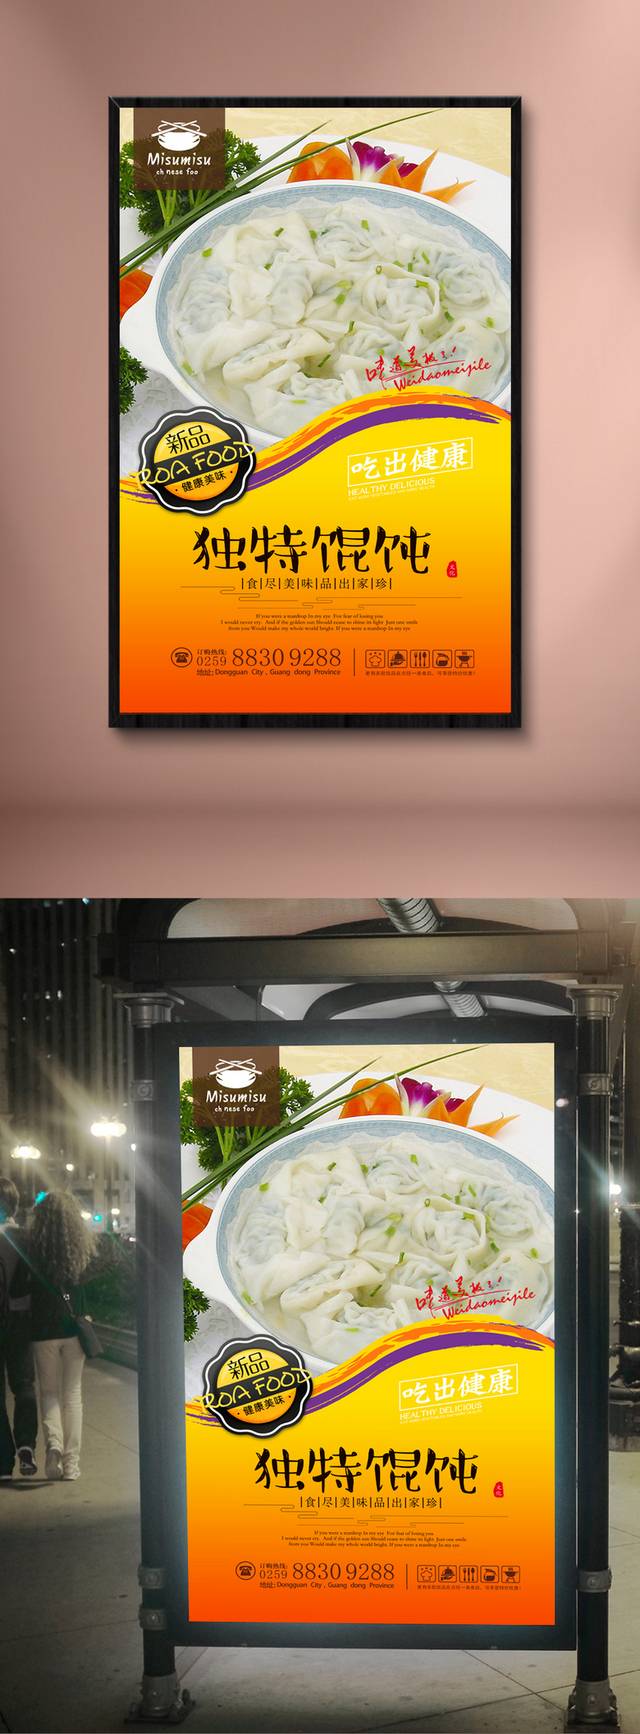 千里香馄饨宣传海报设计下载